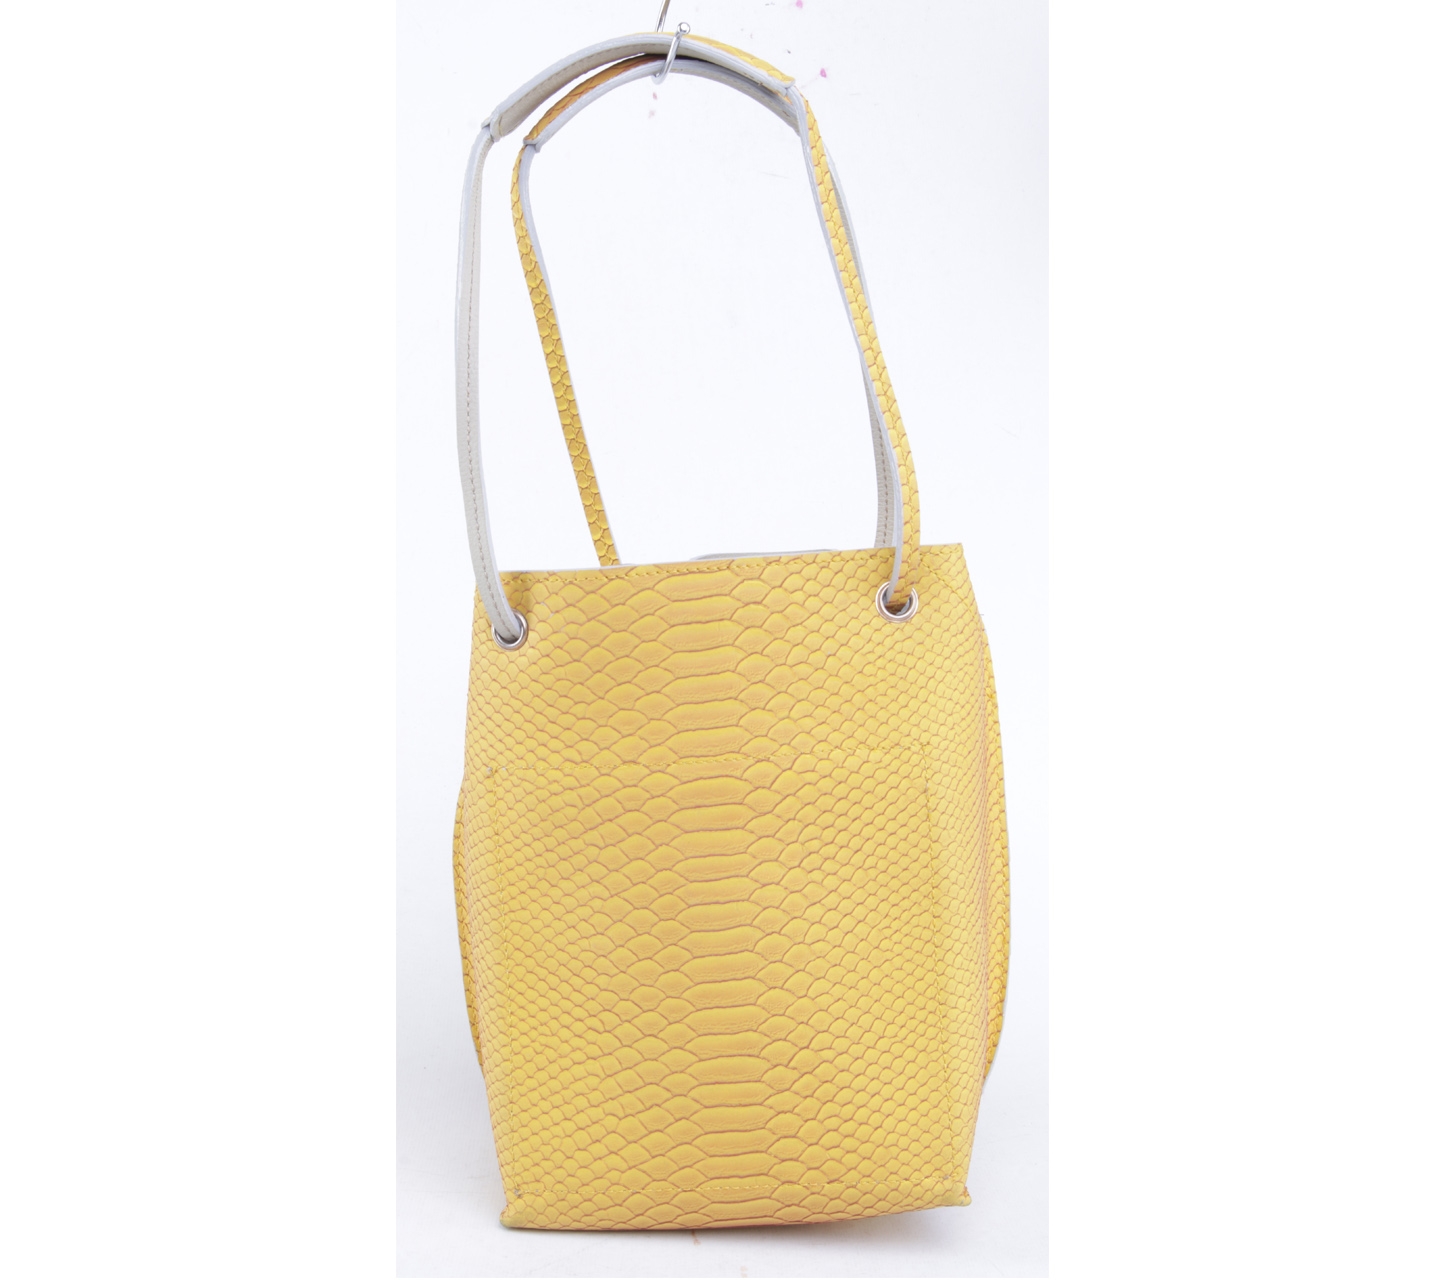 Loev Dapoza Yellow Handbag